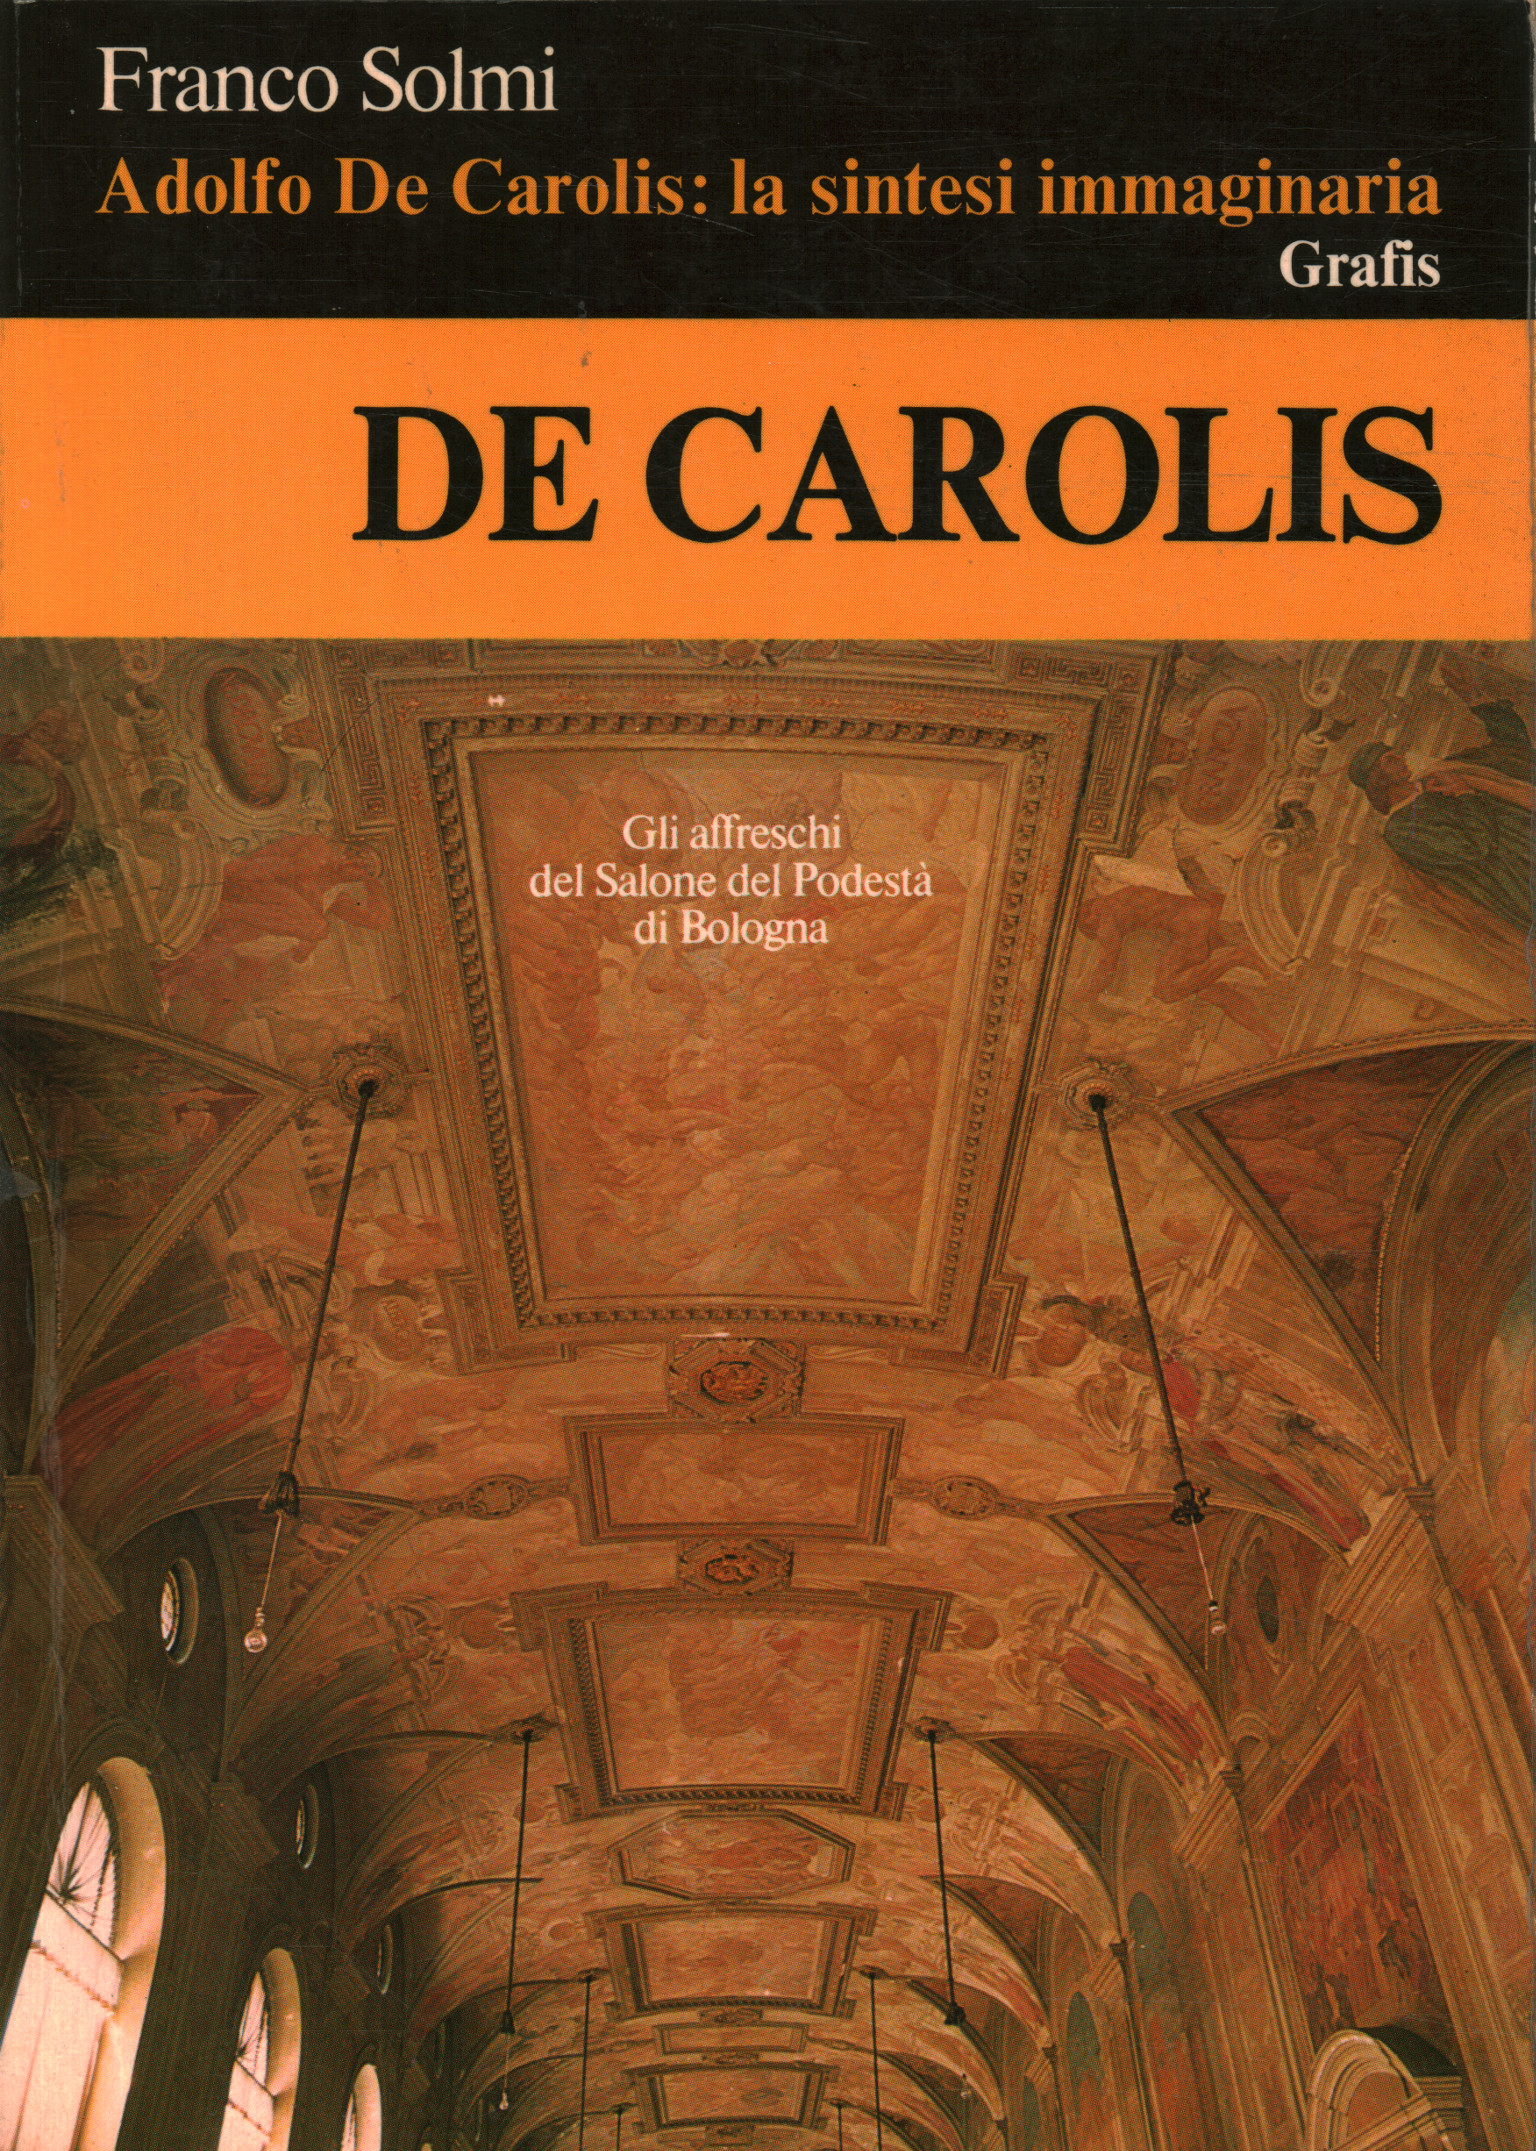 Adolfo De Carolis: la síntesis imaginaria